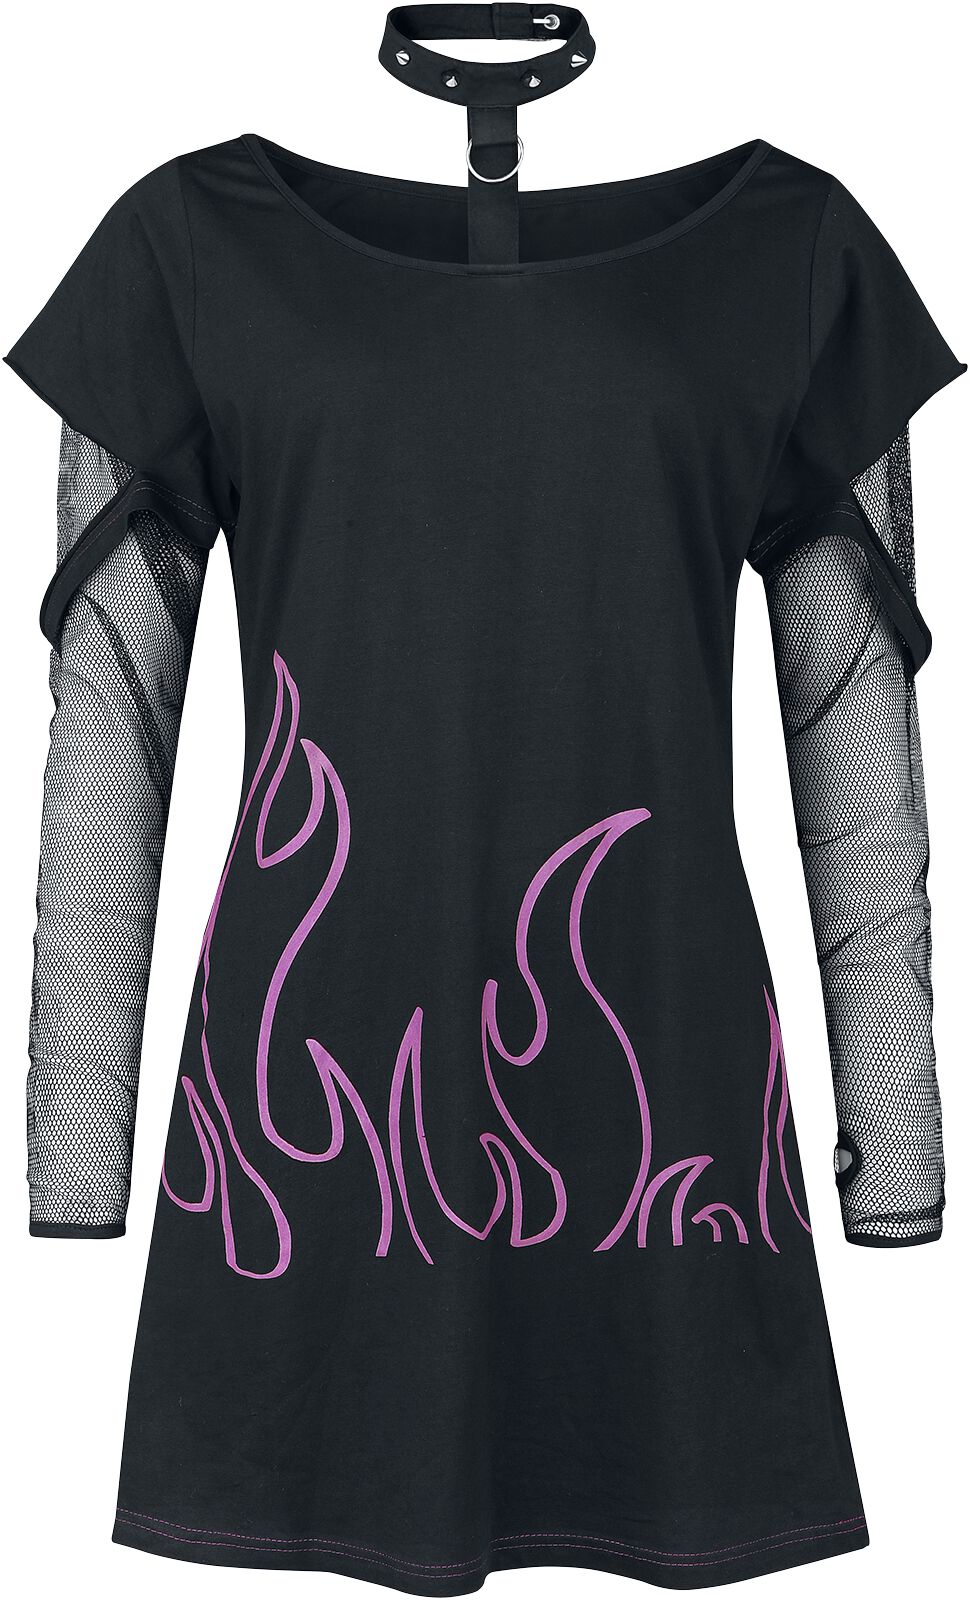 Heartless - Gothic Langarmshirt - Depths Of Hell Top - XS bis 4XL - für Damen - Größe 3XL - schwarz/pink